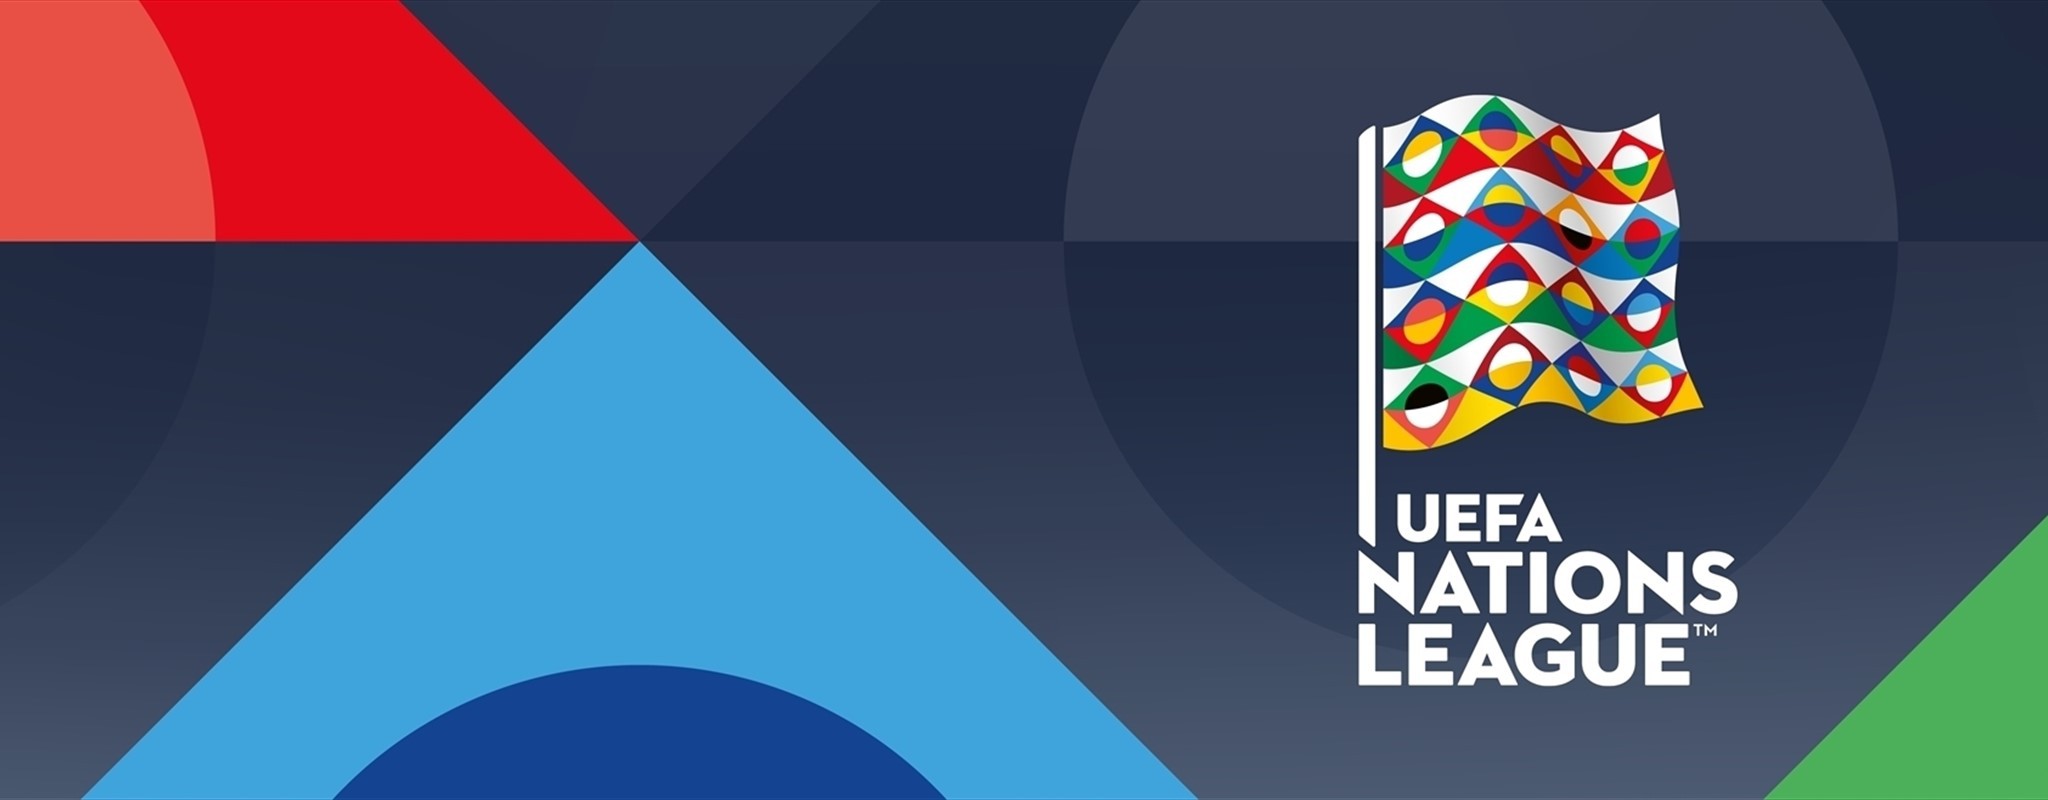 Лига наций: опубликованы правила нового турнира от УЕФА